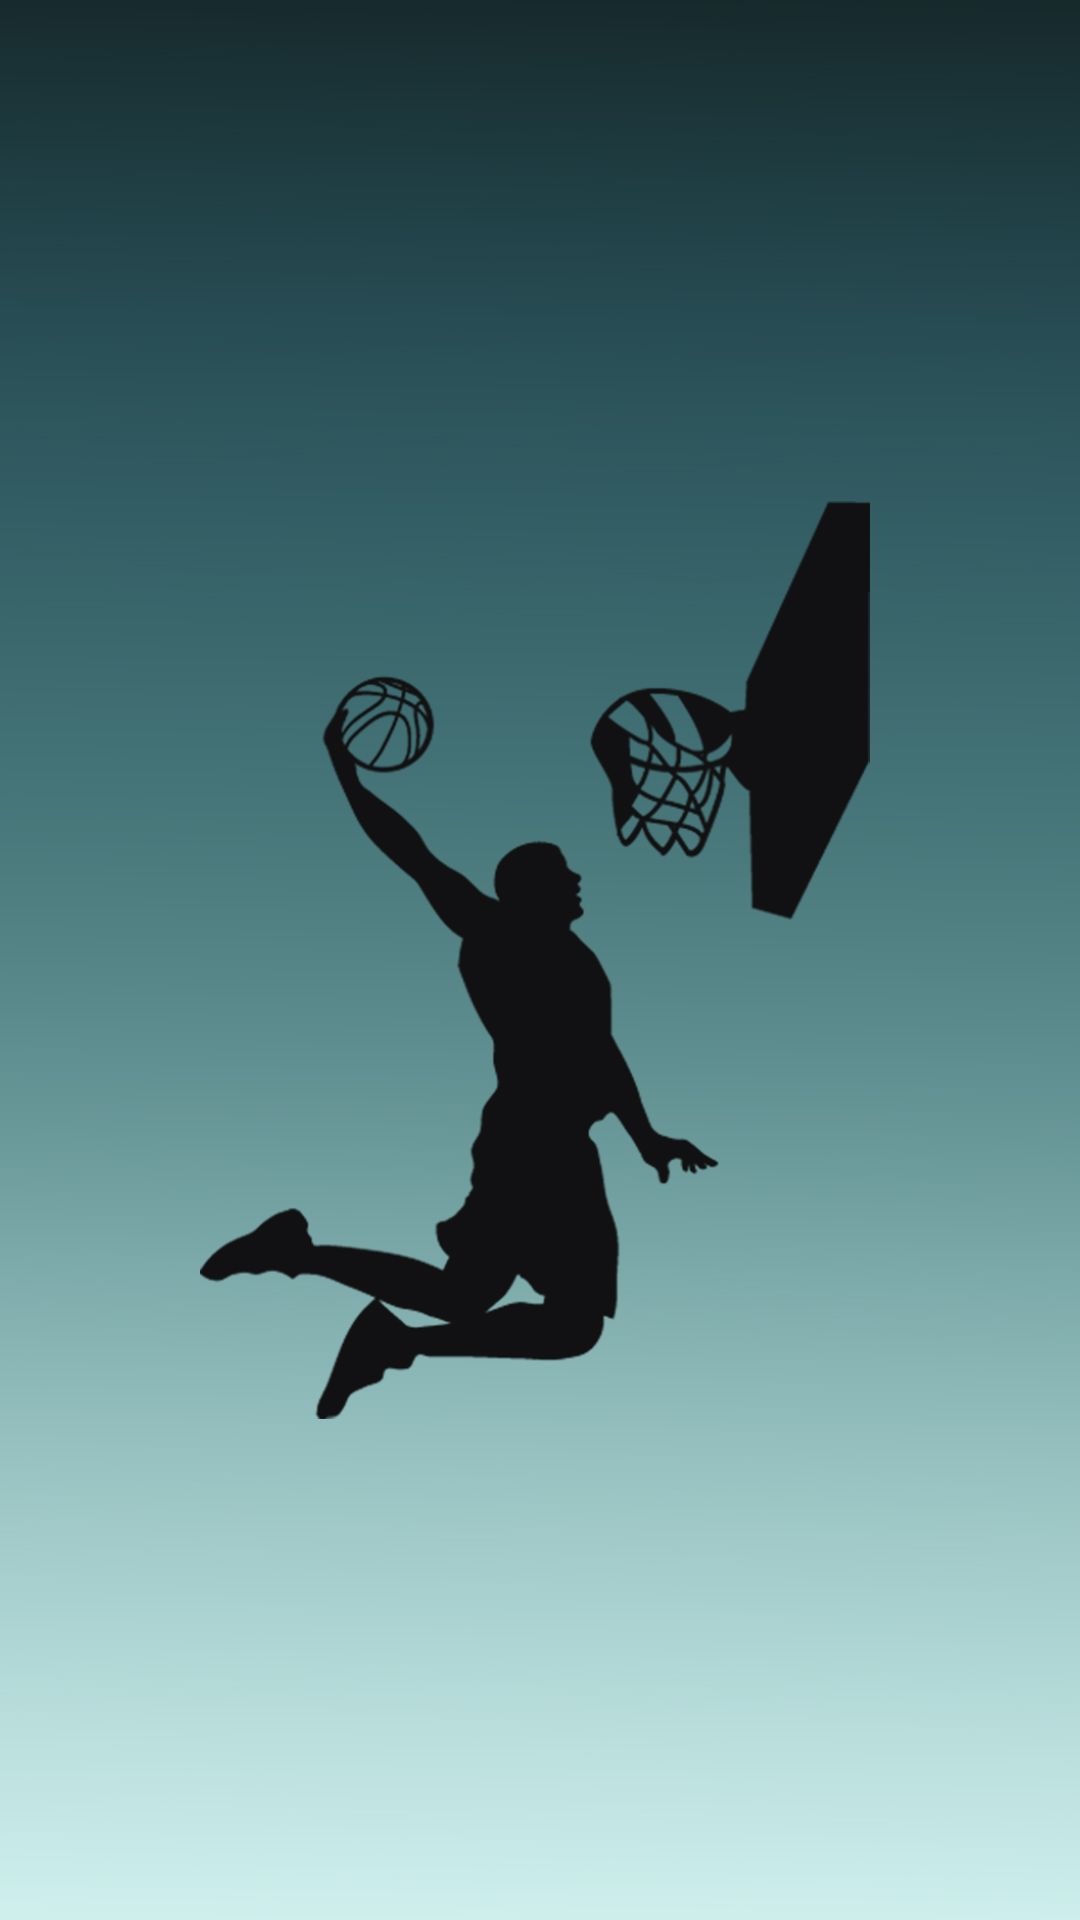 Aesthetic Basketball Wallpaper